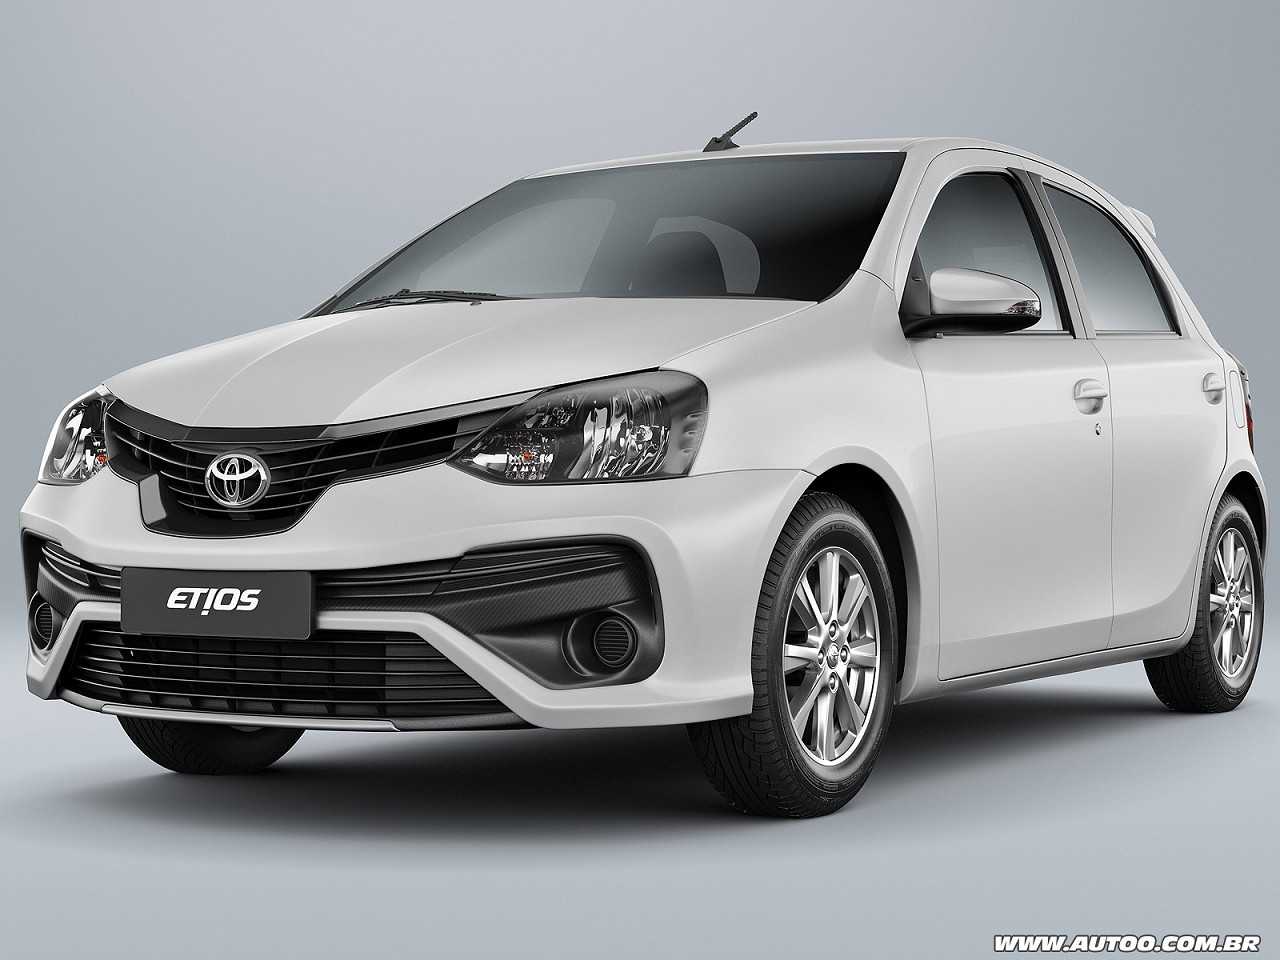 Comprar o Fiat Argo Precision 1.8 ou um Toyota Etios X Plus 1.5?